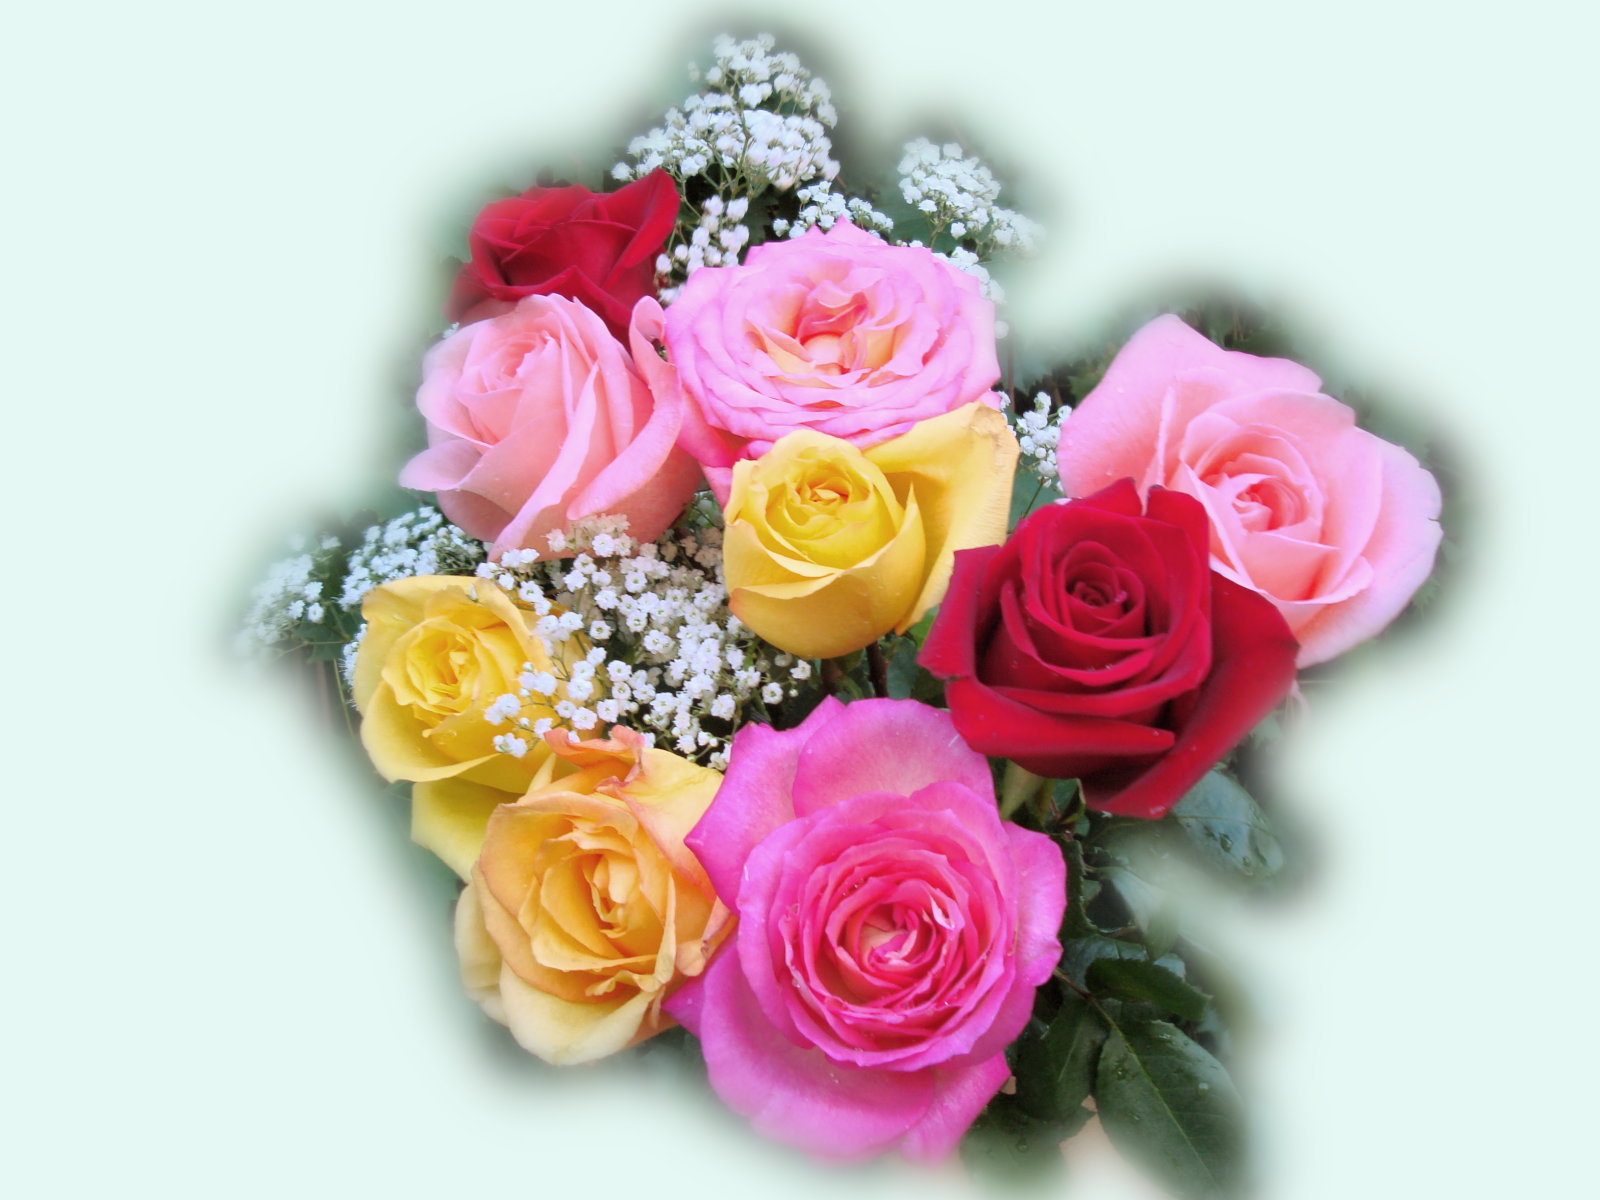 roses_bouquet_bg-dsc00029.jpg